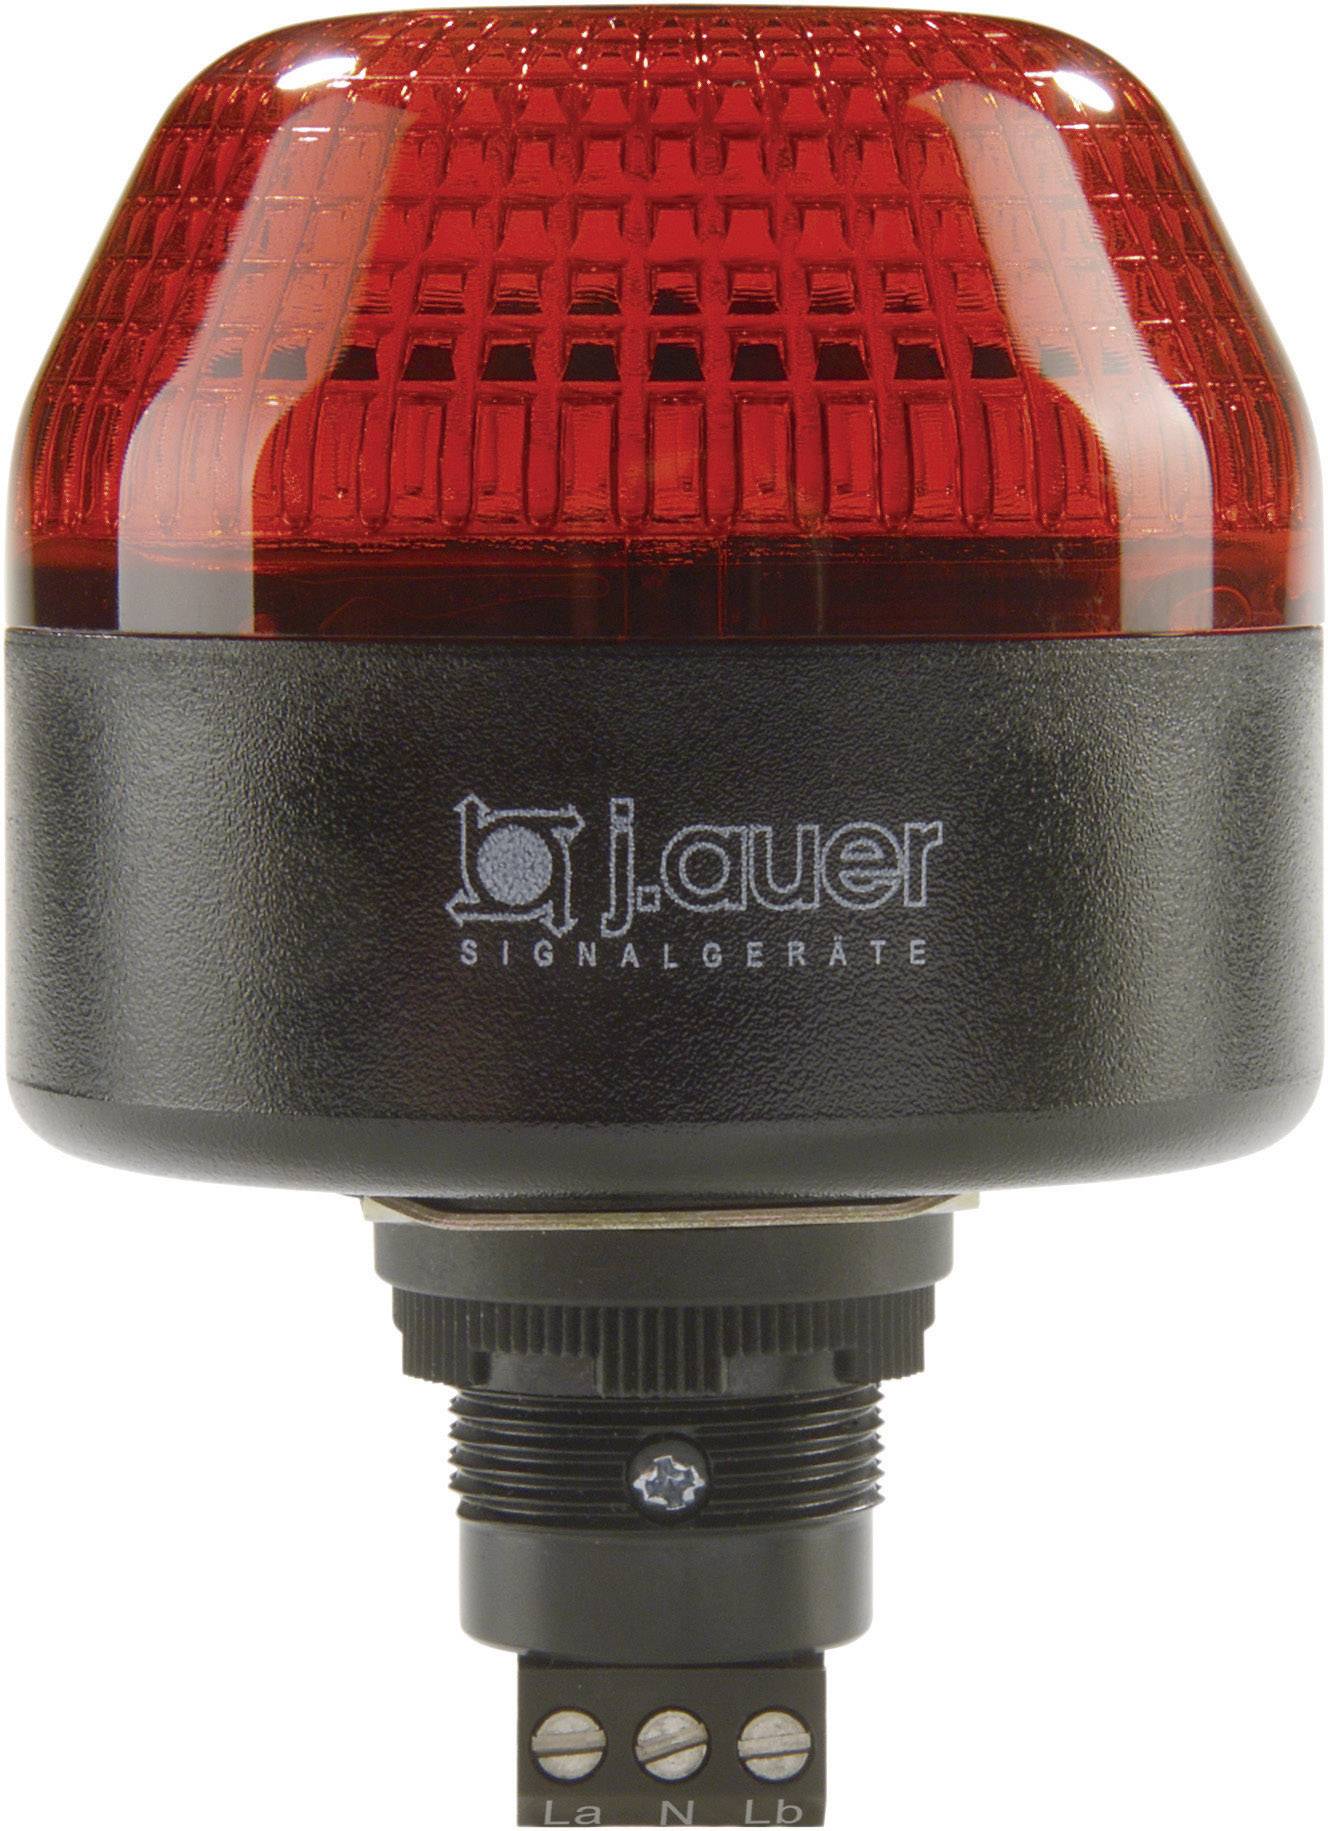 AUER SIGNAL Signalleuchte LED Auer Signalgeräte IBL Rot Dauerlicht, Blinklicht 230 V/AC